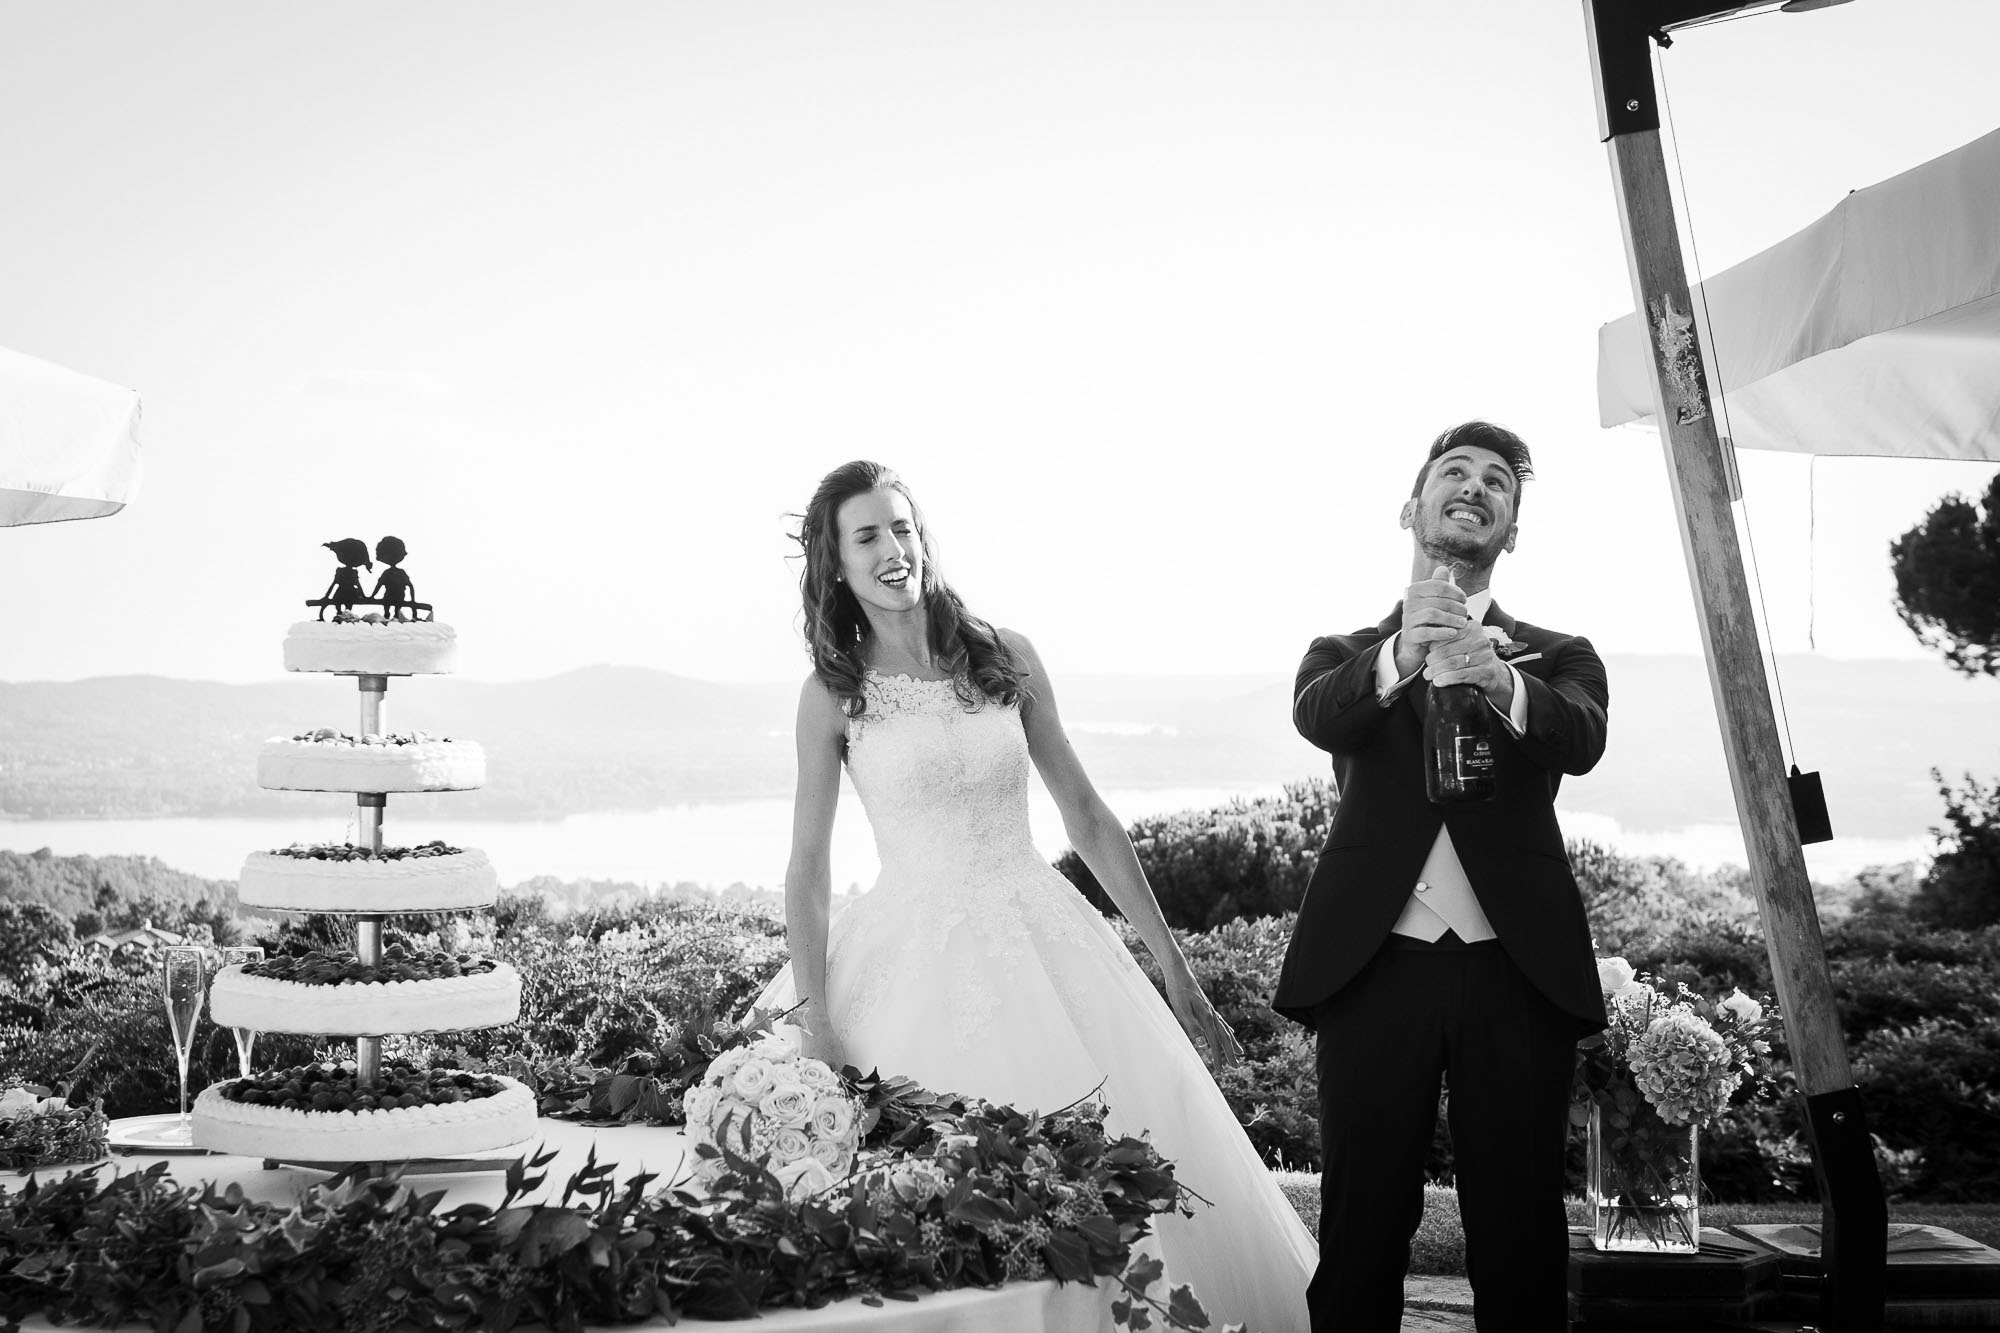 Matrimonio di Deborah e Paolo in Villa San Martino a Barasso